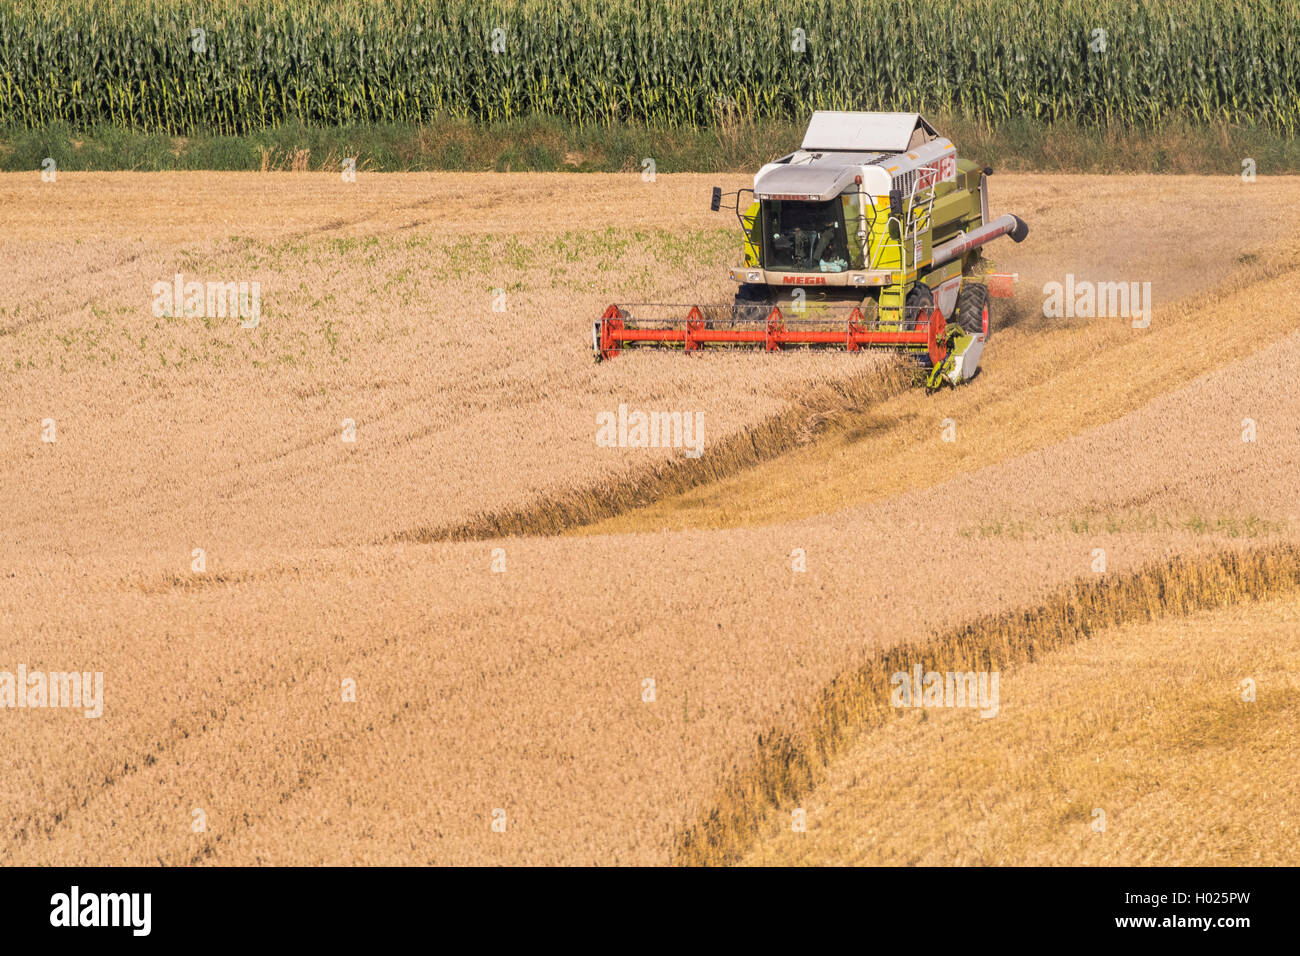 Le blé tendre, cultivé du blé (Triticum aestivum), champ de blé, la récolte avec une moissonneuse, Allemagne, Bavière, Isental Banque D'Images